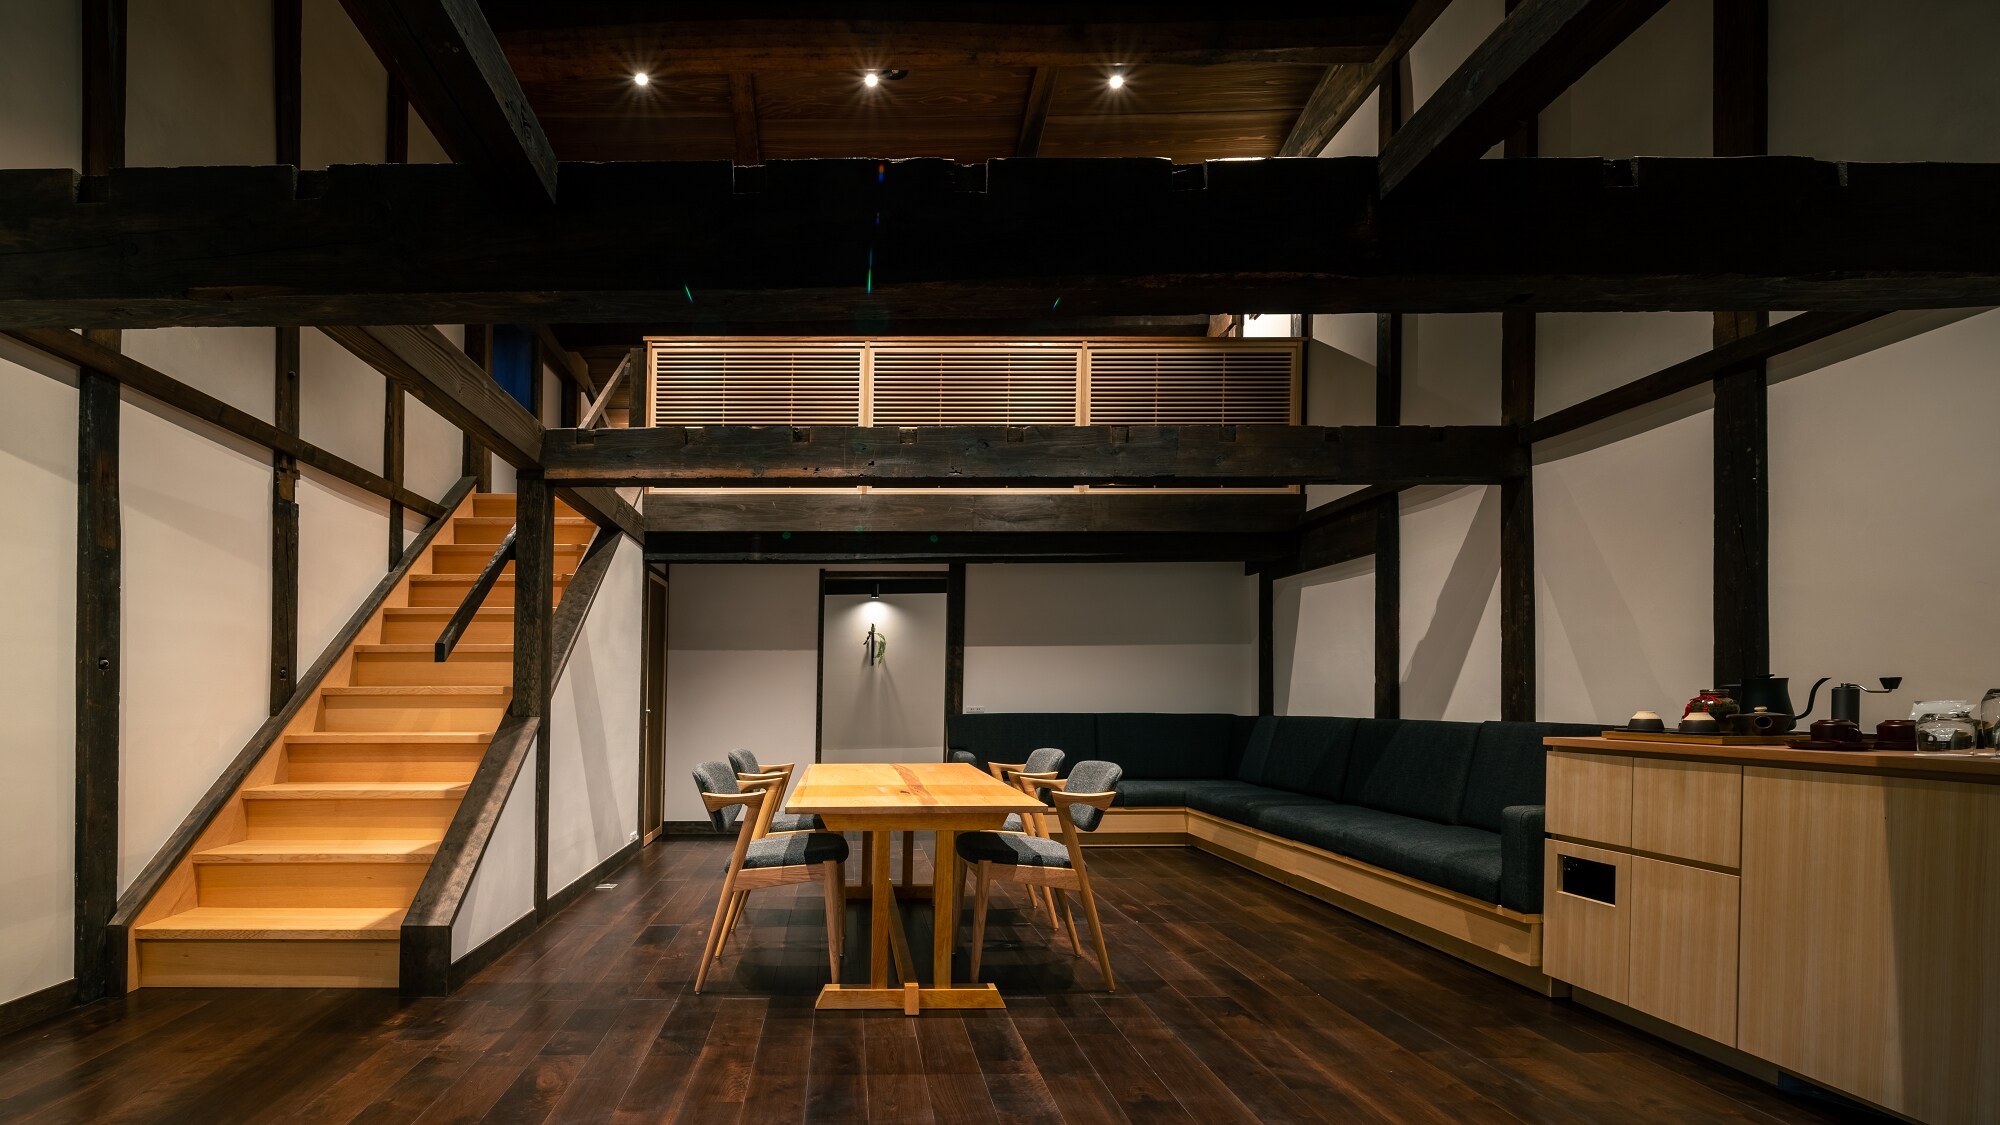 [Annex / Shimamoya] Hyakujugo / Breathing storehouse with history / Semi-open-air bath